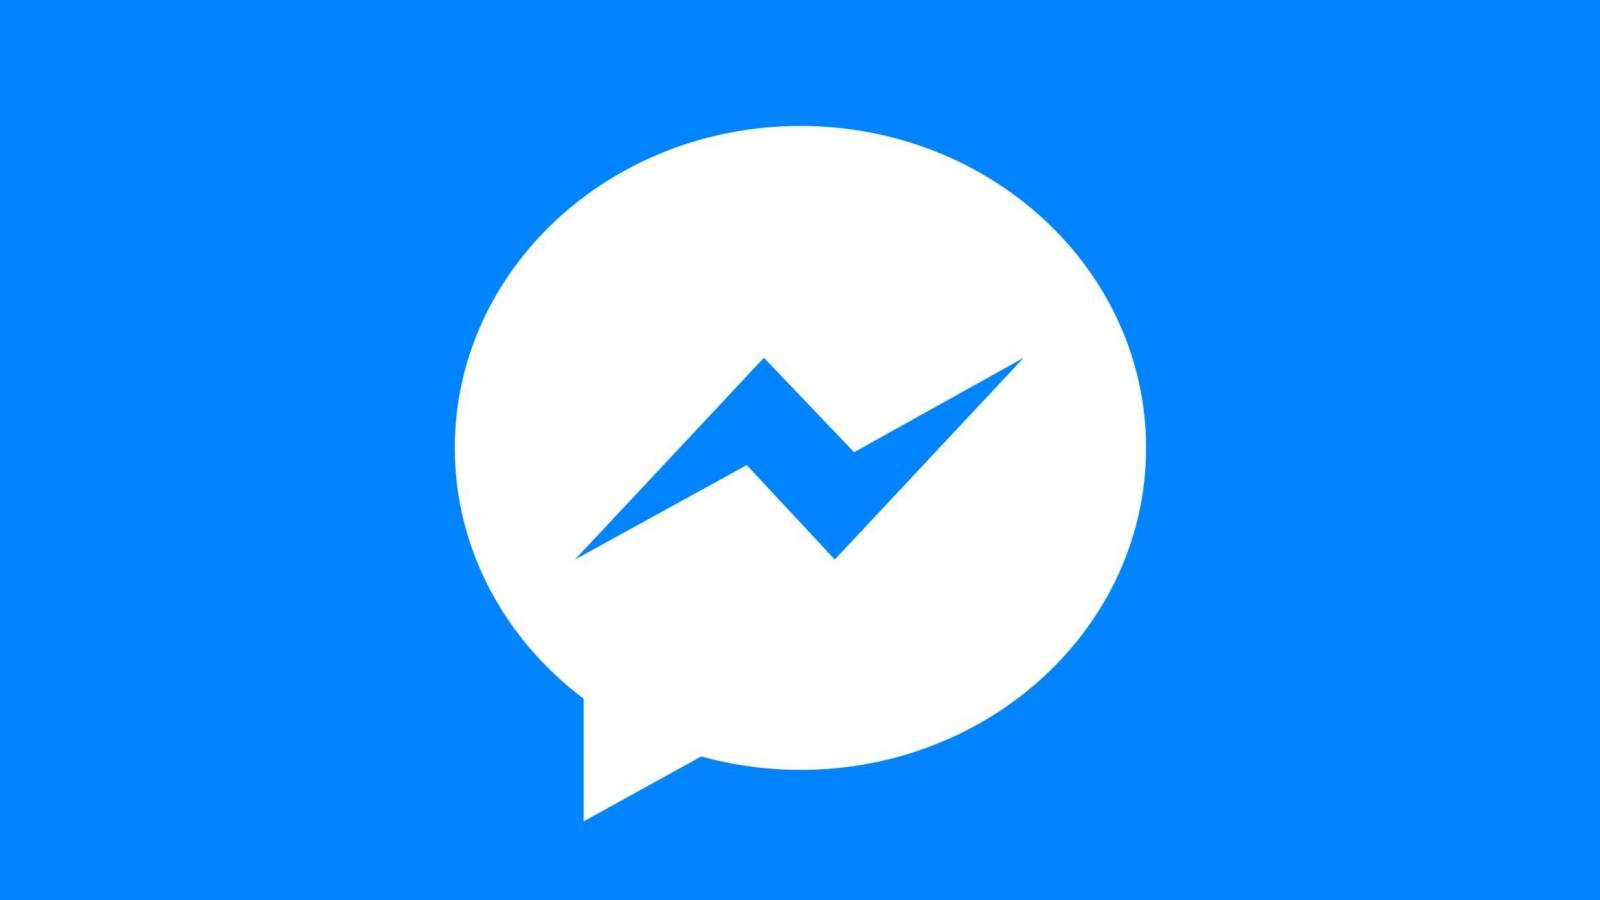 Facebook Messenger noutati actualizare noua